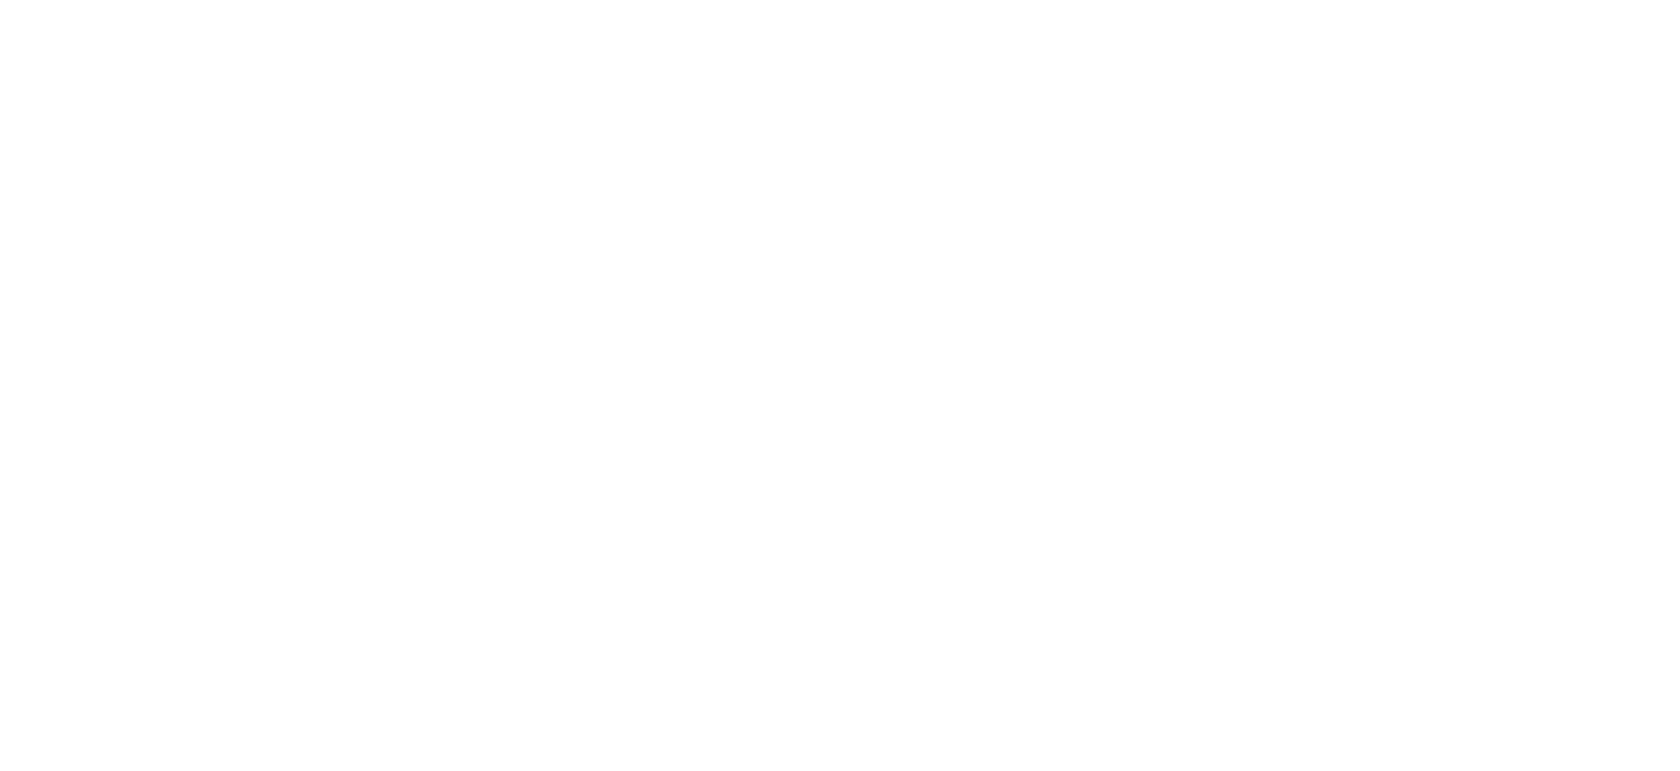 Изображения одного и того же участка образца: во вторичных электронах (слева) и КЛ изображение (справа) зонального выделения шеелита (CaWO4).